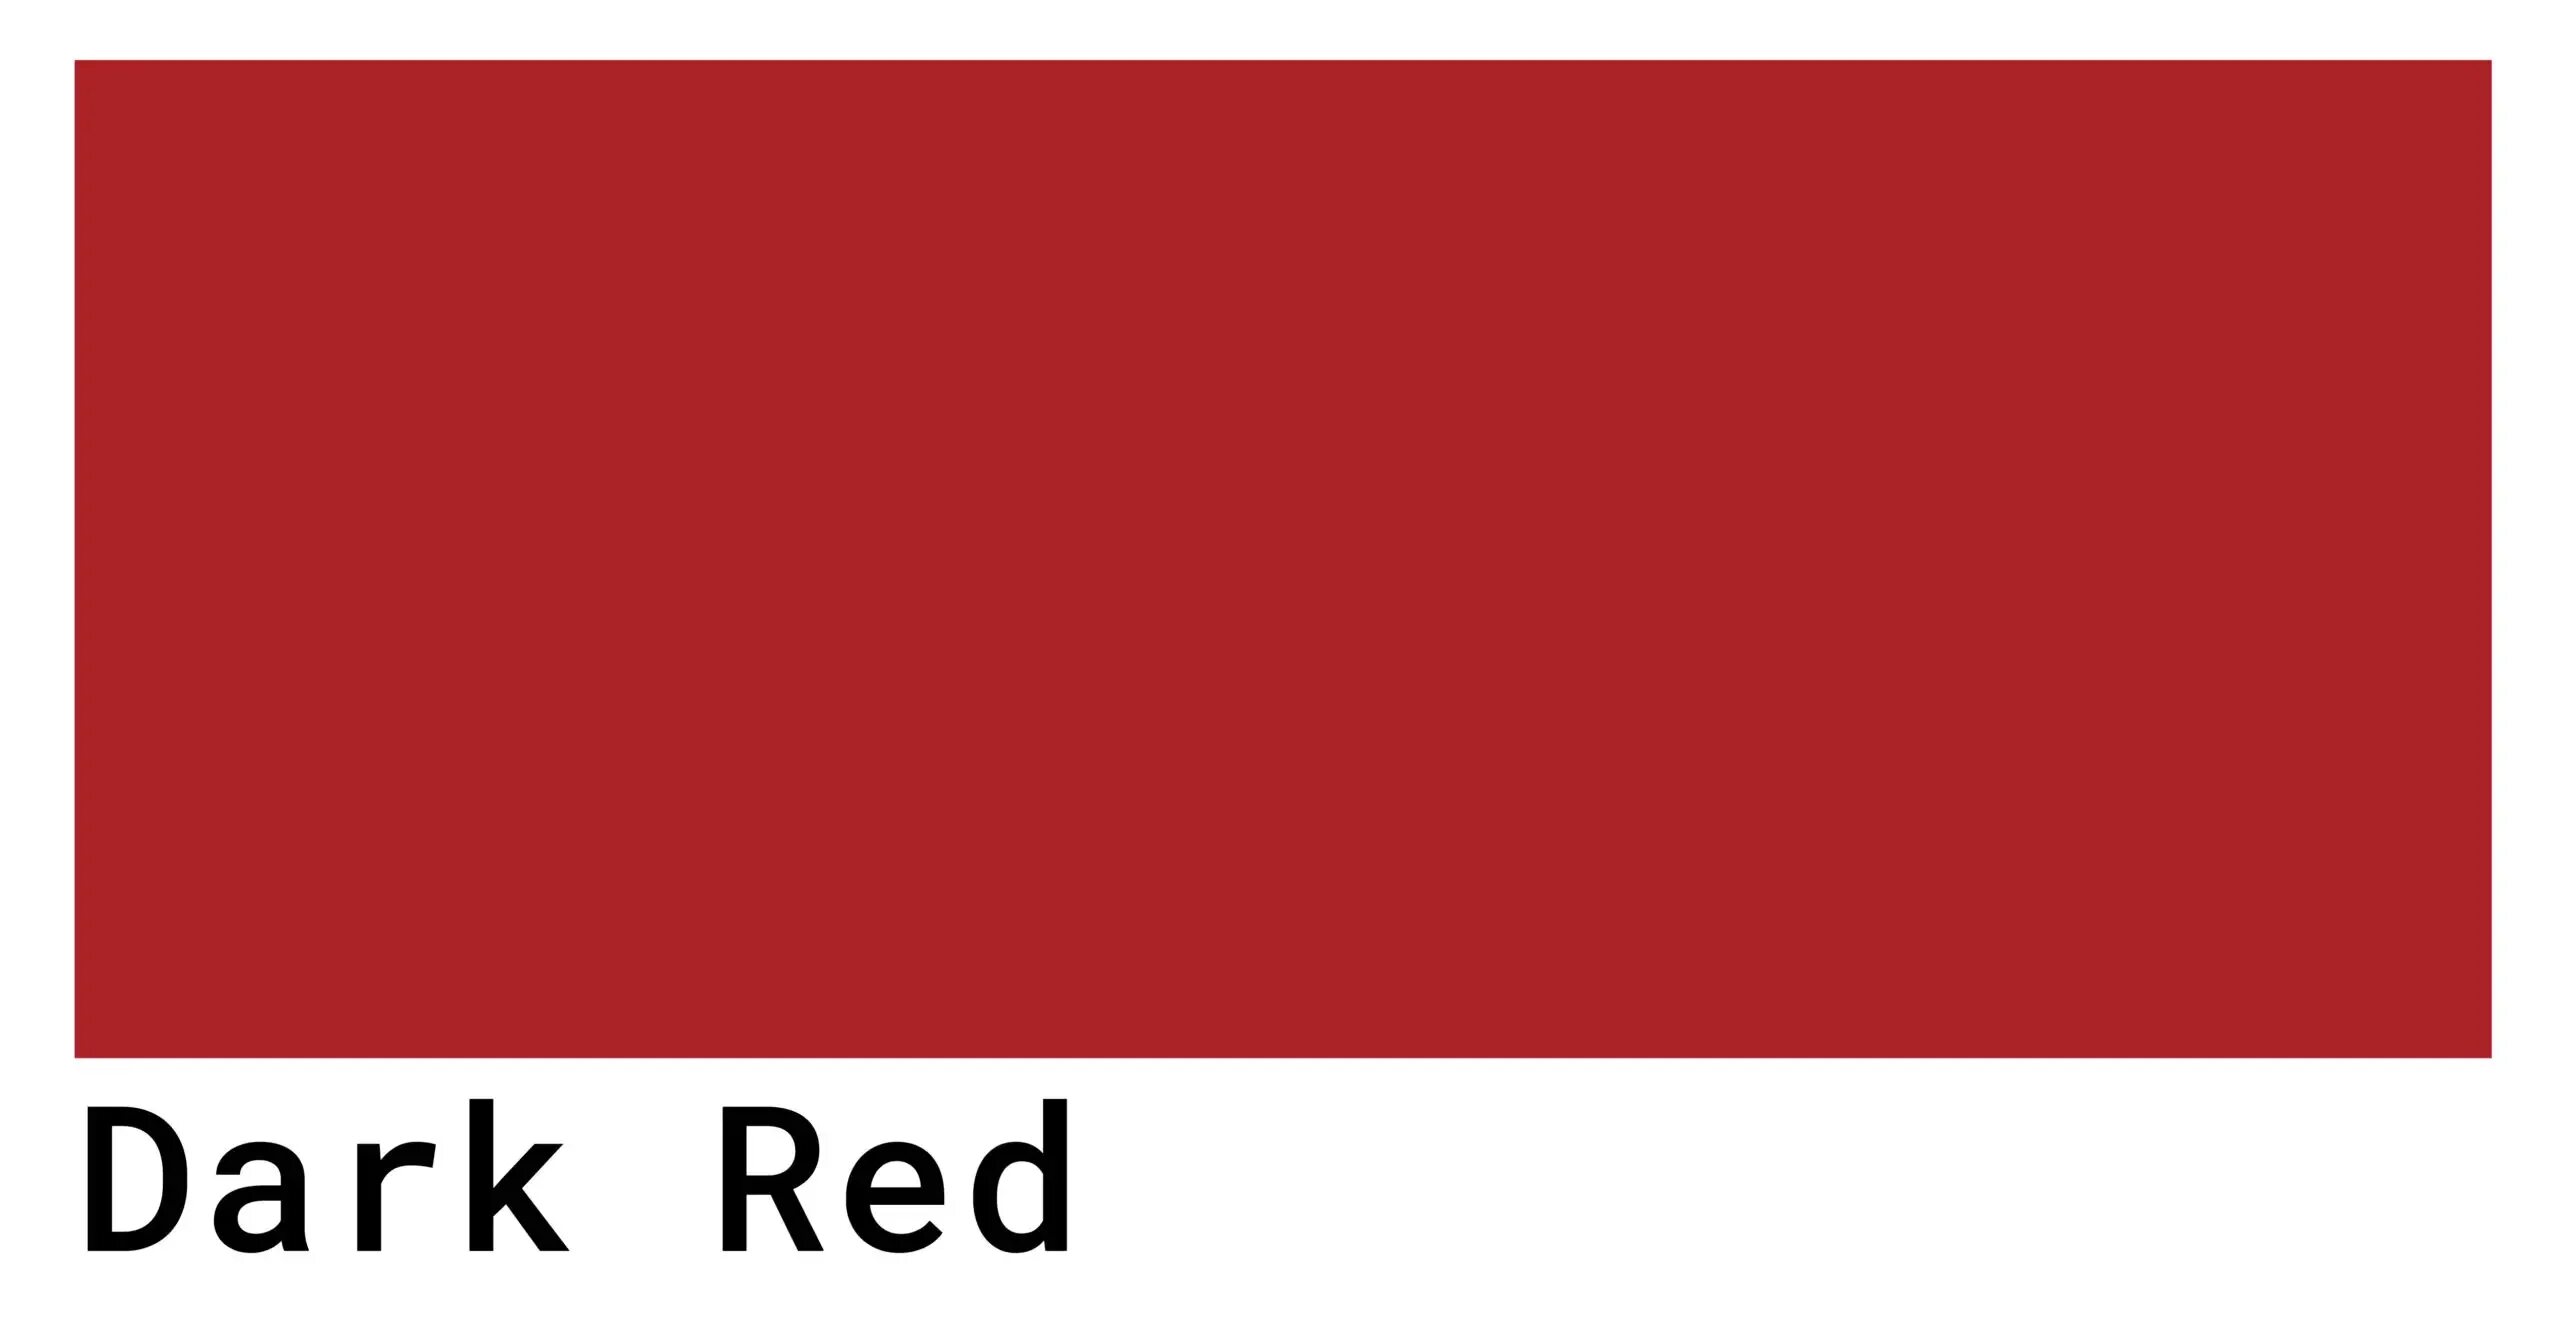 Scarlet цвет. Глубокий красный цвет. Вишнево-красный цвет. Scarlet Red цвет.